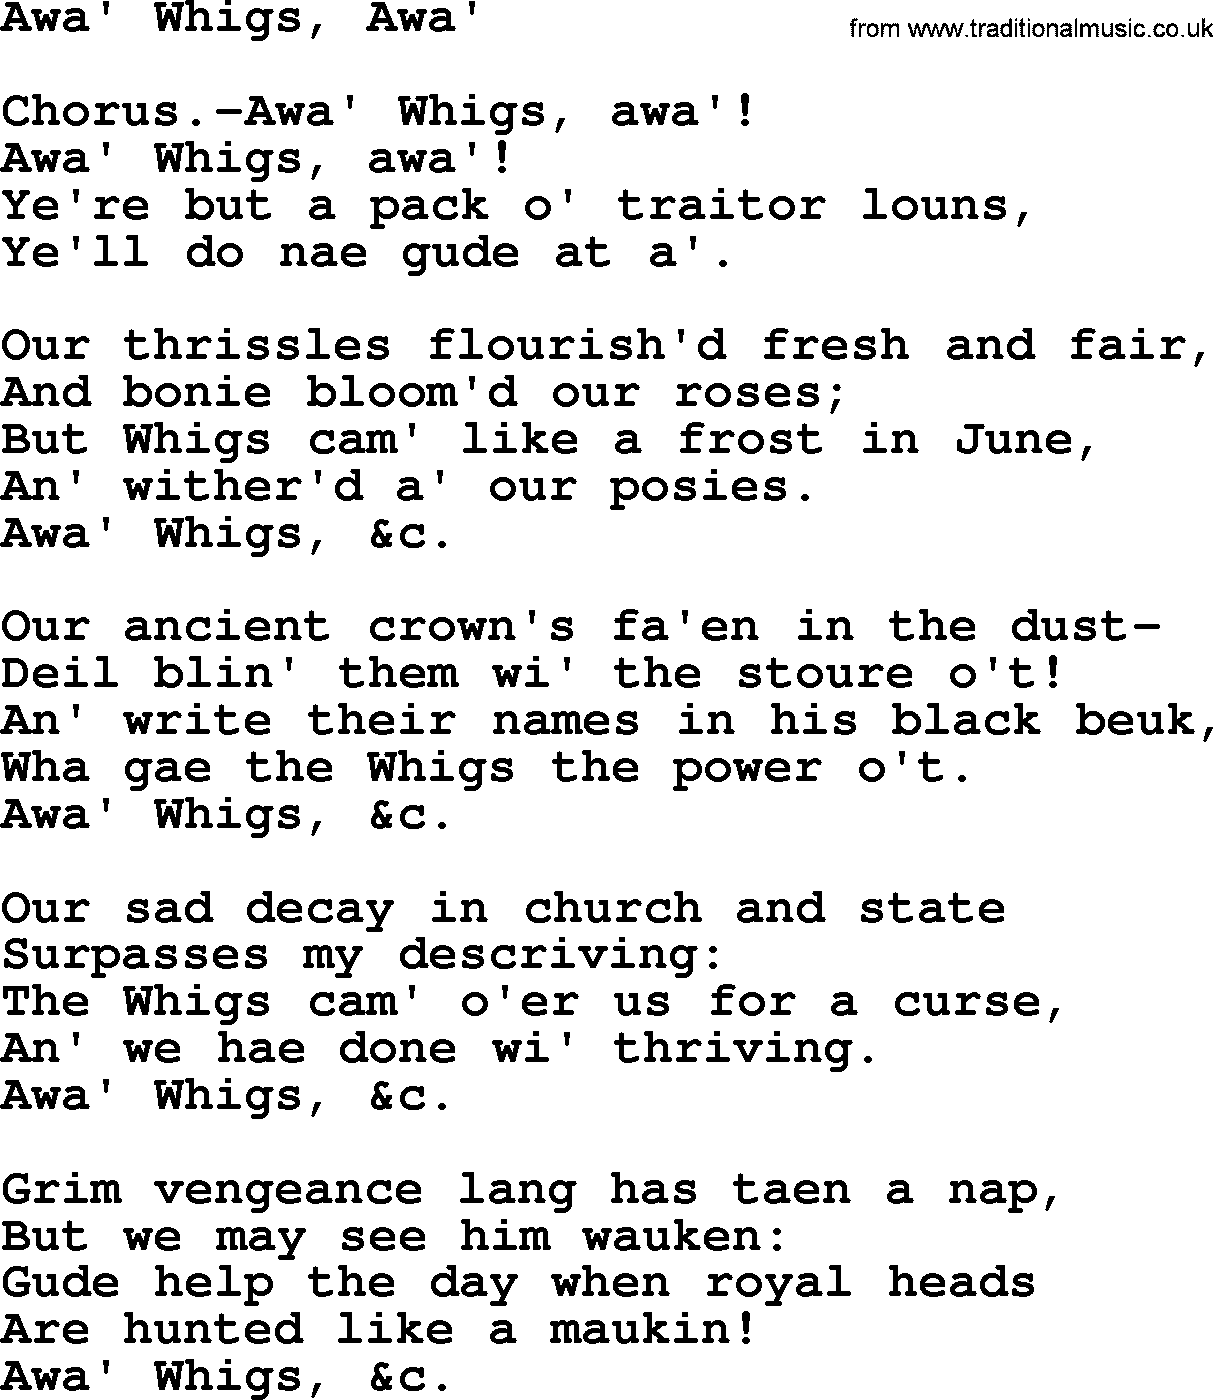 Robert Burns Songs & Lyrics: Awa' Whigs, Awa'